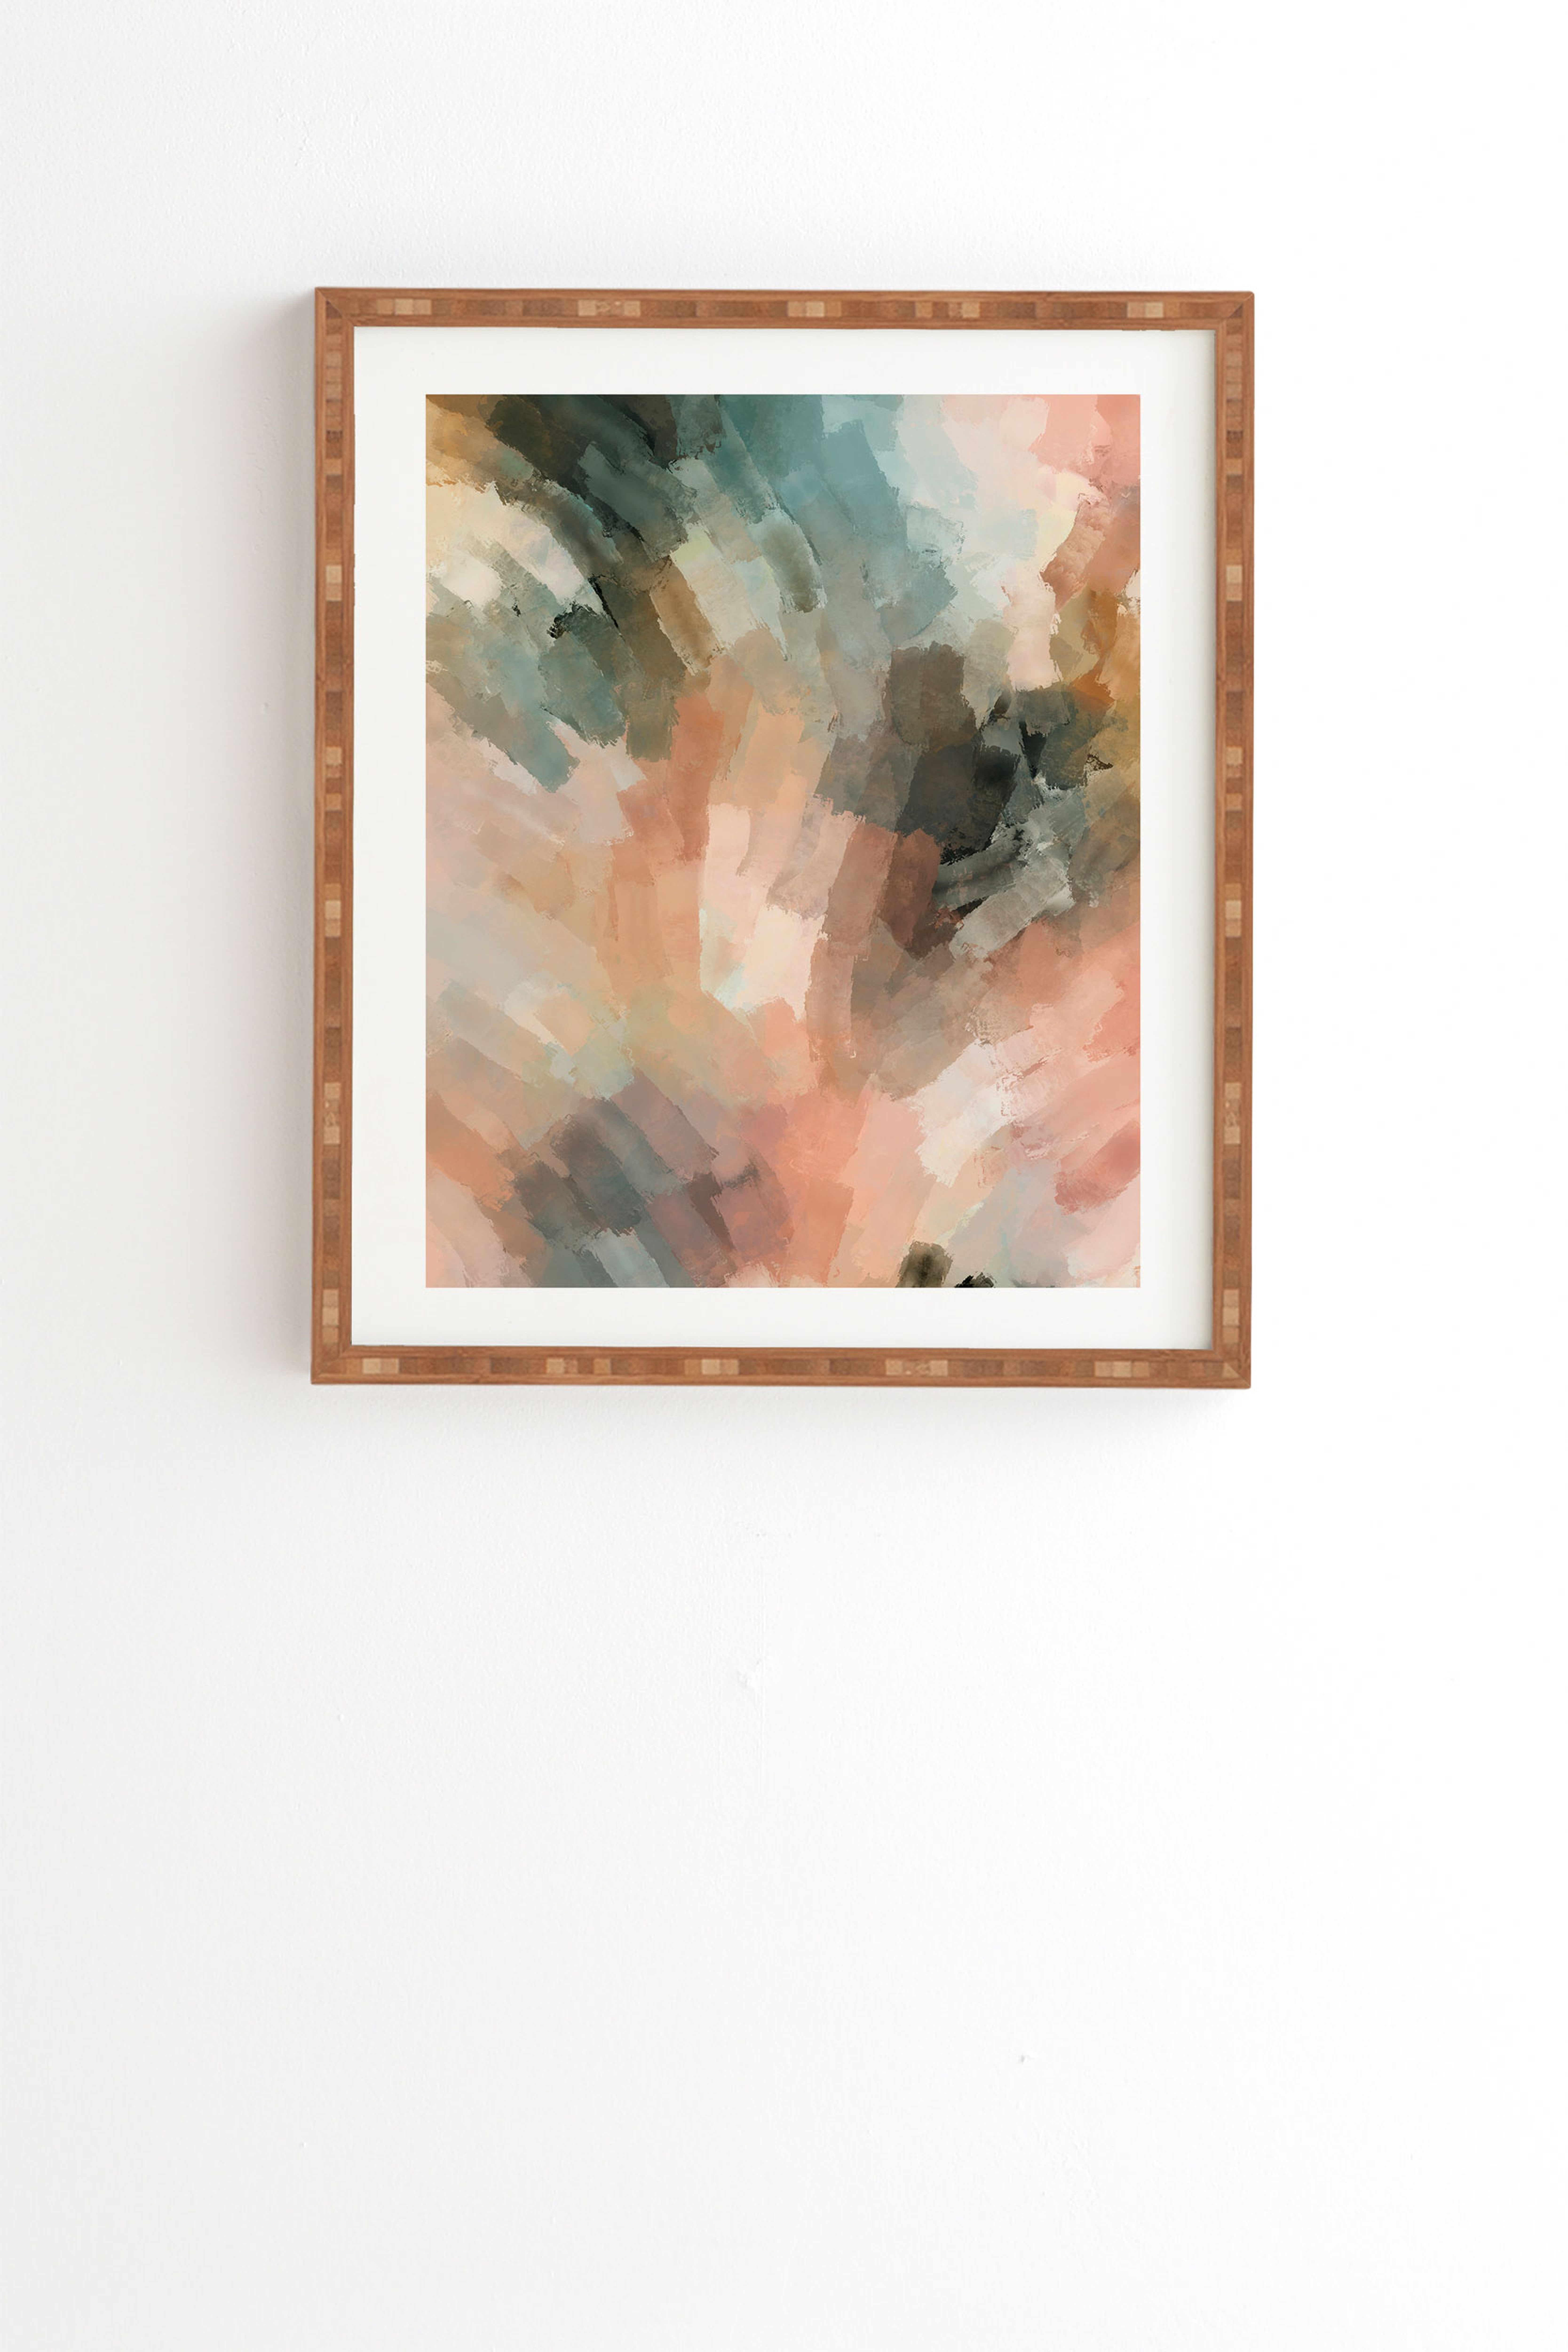 Waves Strokes Iii by Marta Barragan Camarasa - Framed Wall Art Bamboo 14" x 16.5" - Wander Print Co.